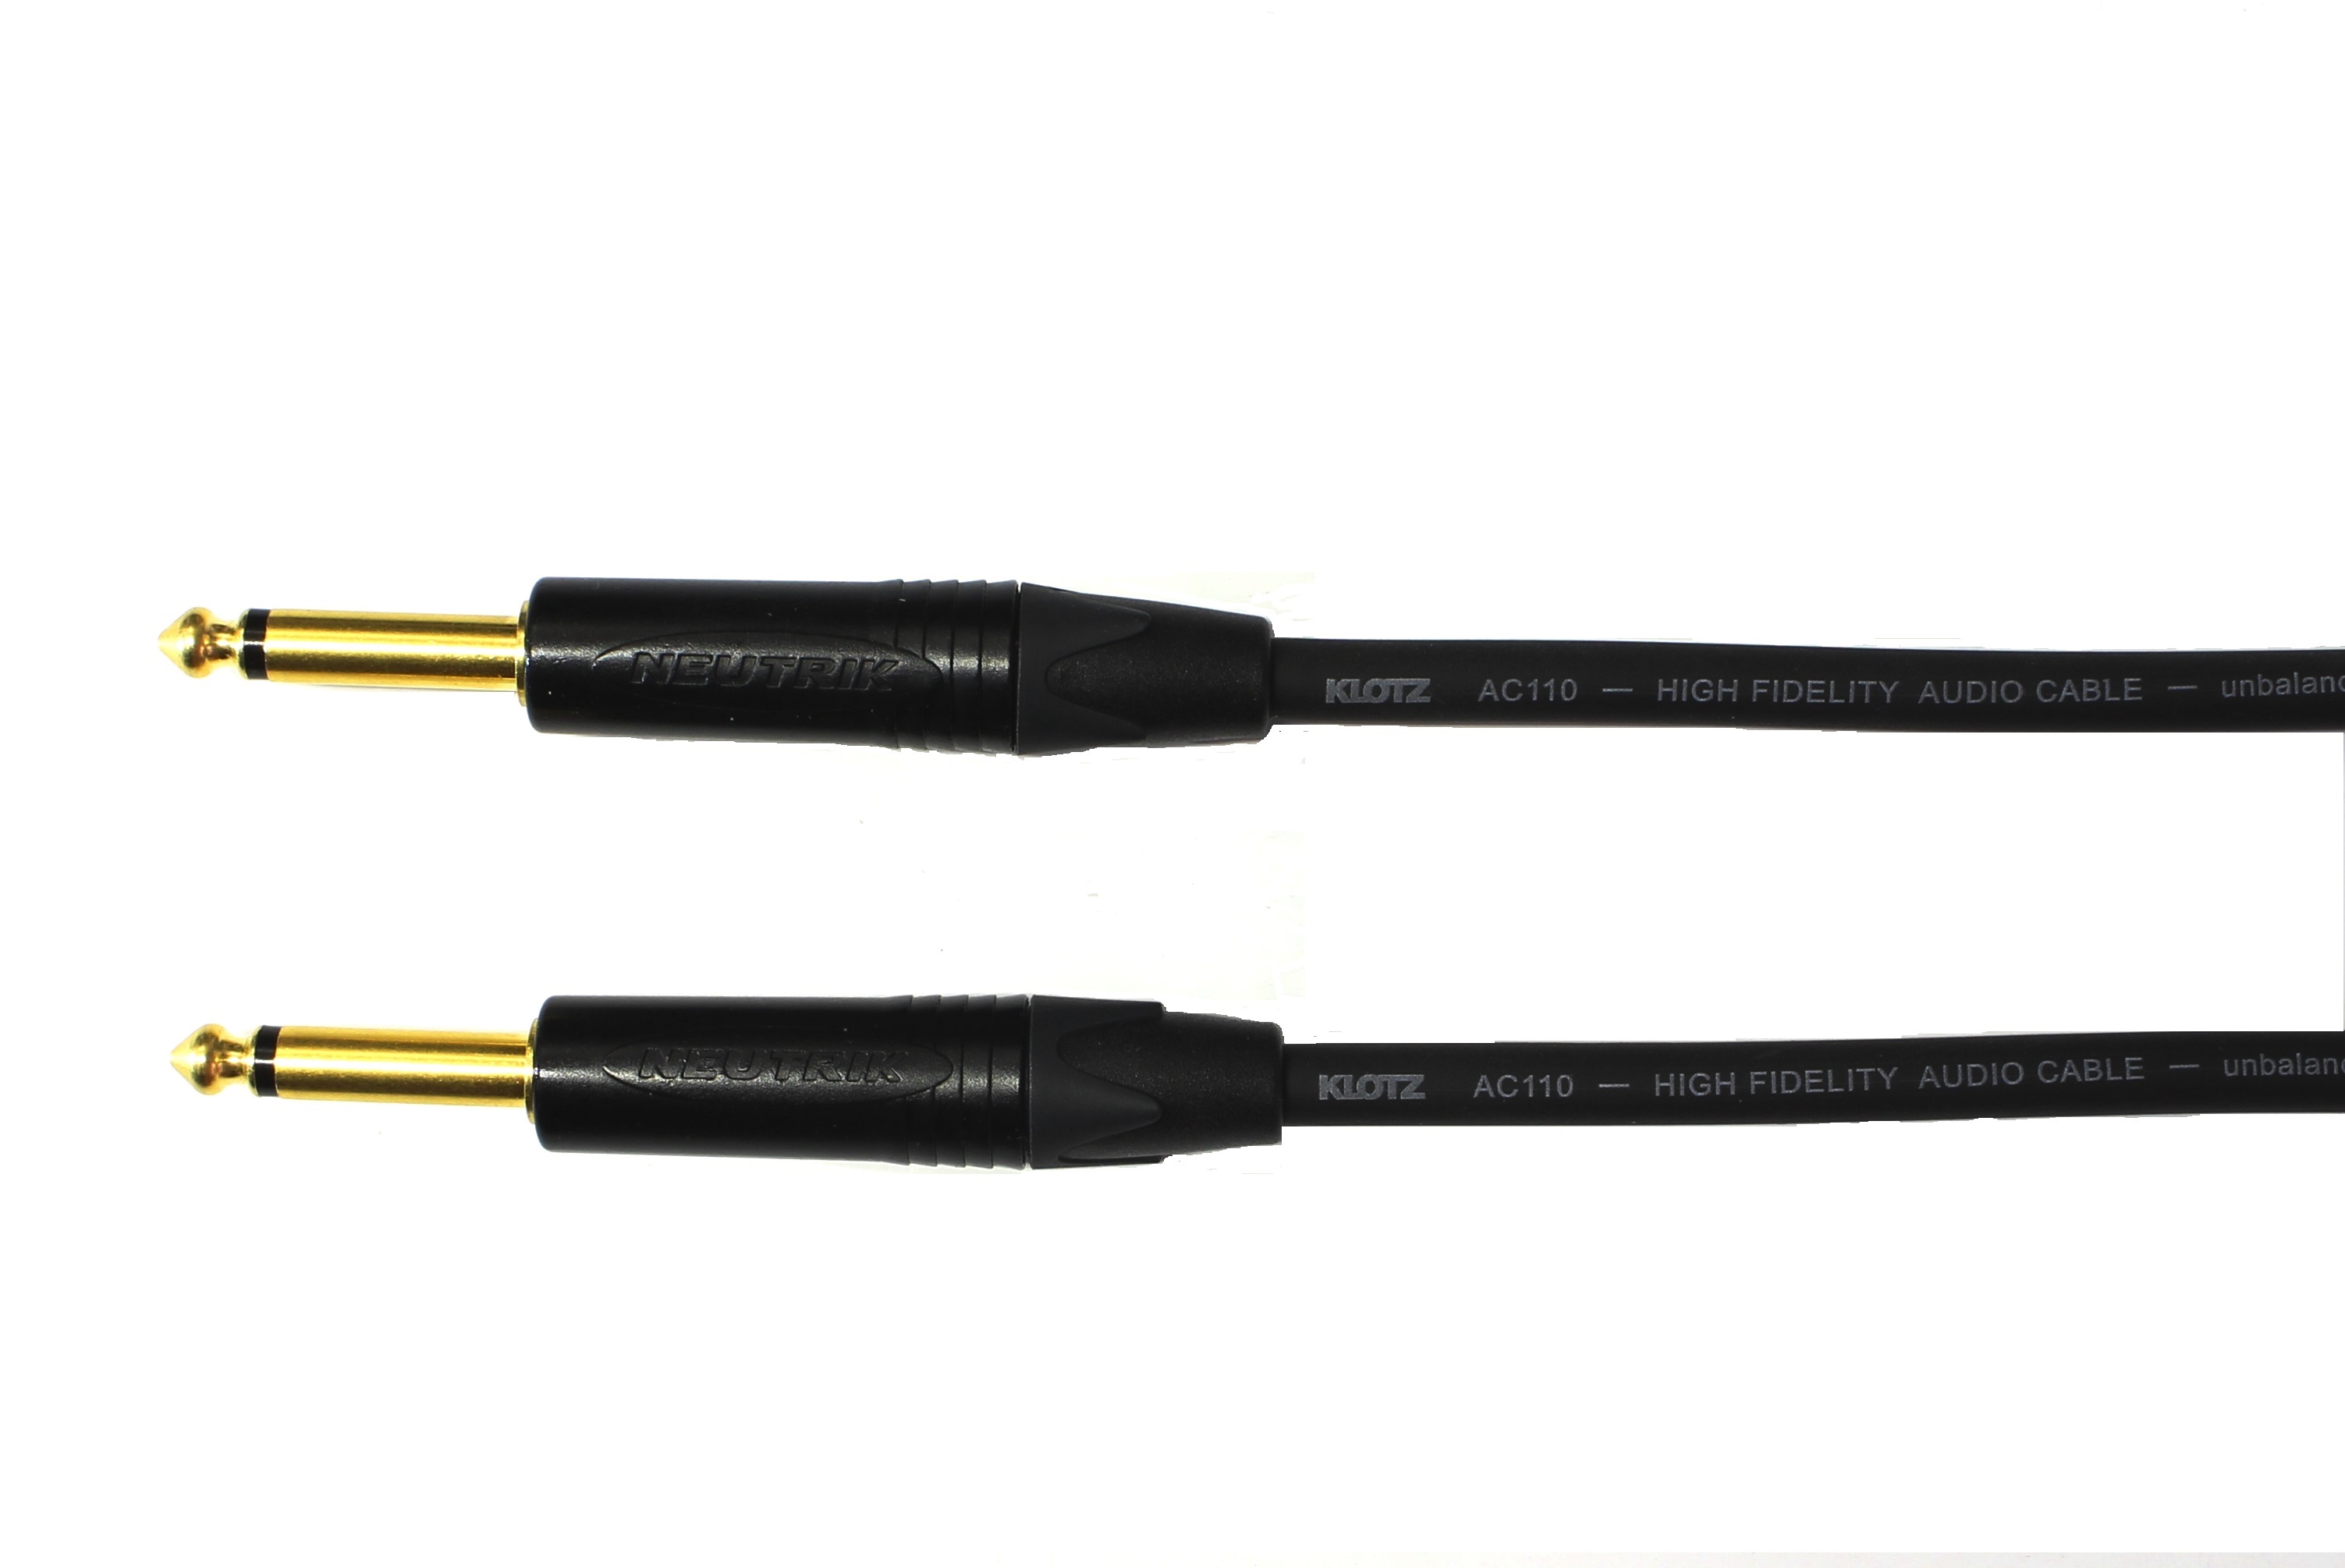 Kytarový kabel Jack 6,3 mono přímý/ Jack 6,3 mono přímý, 1,5 m, AC110